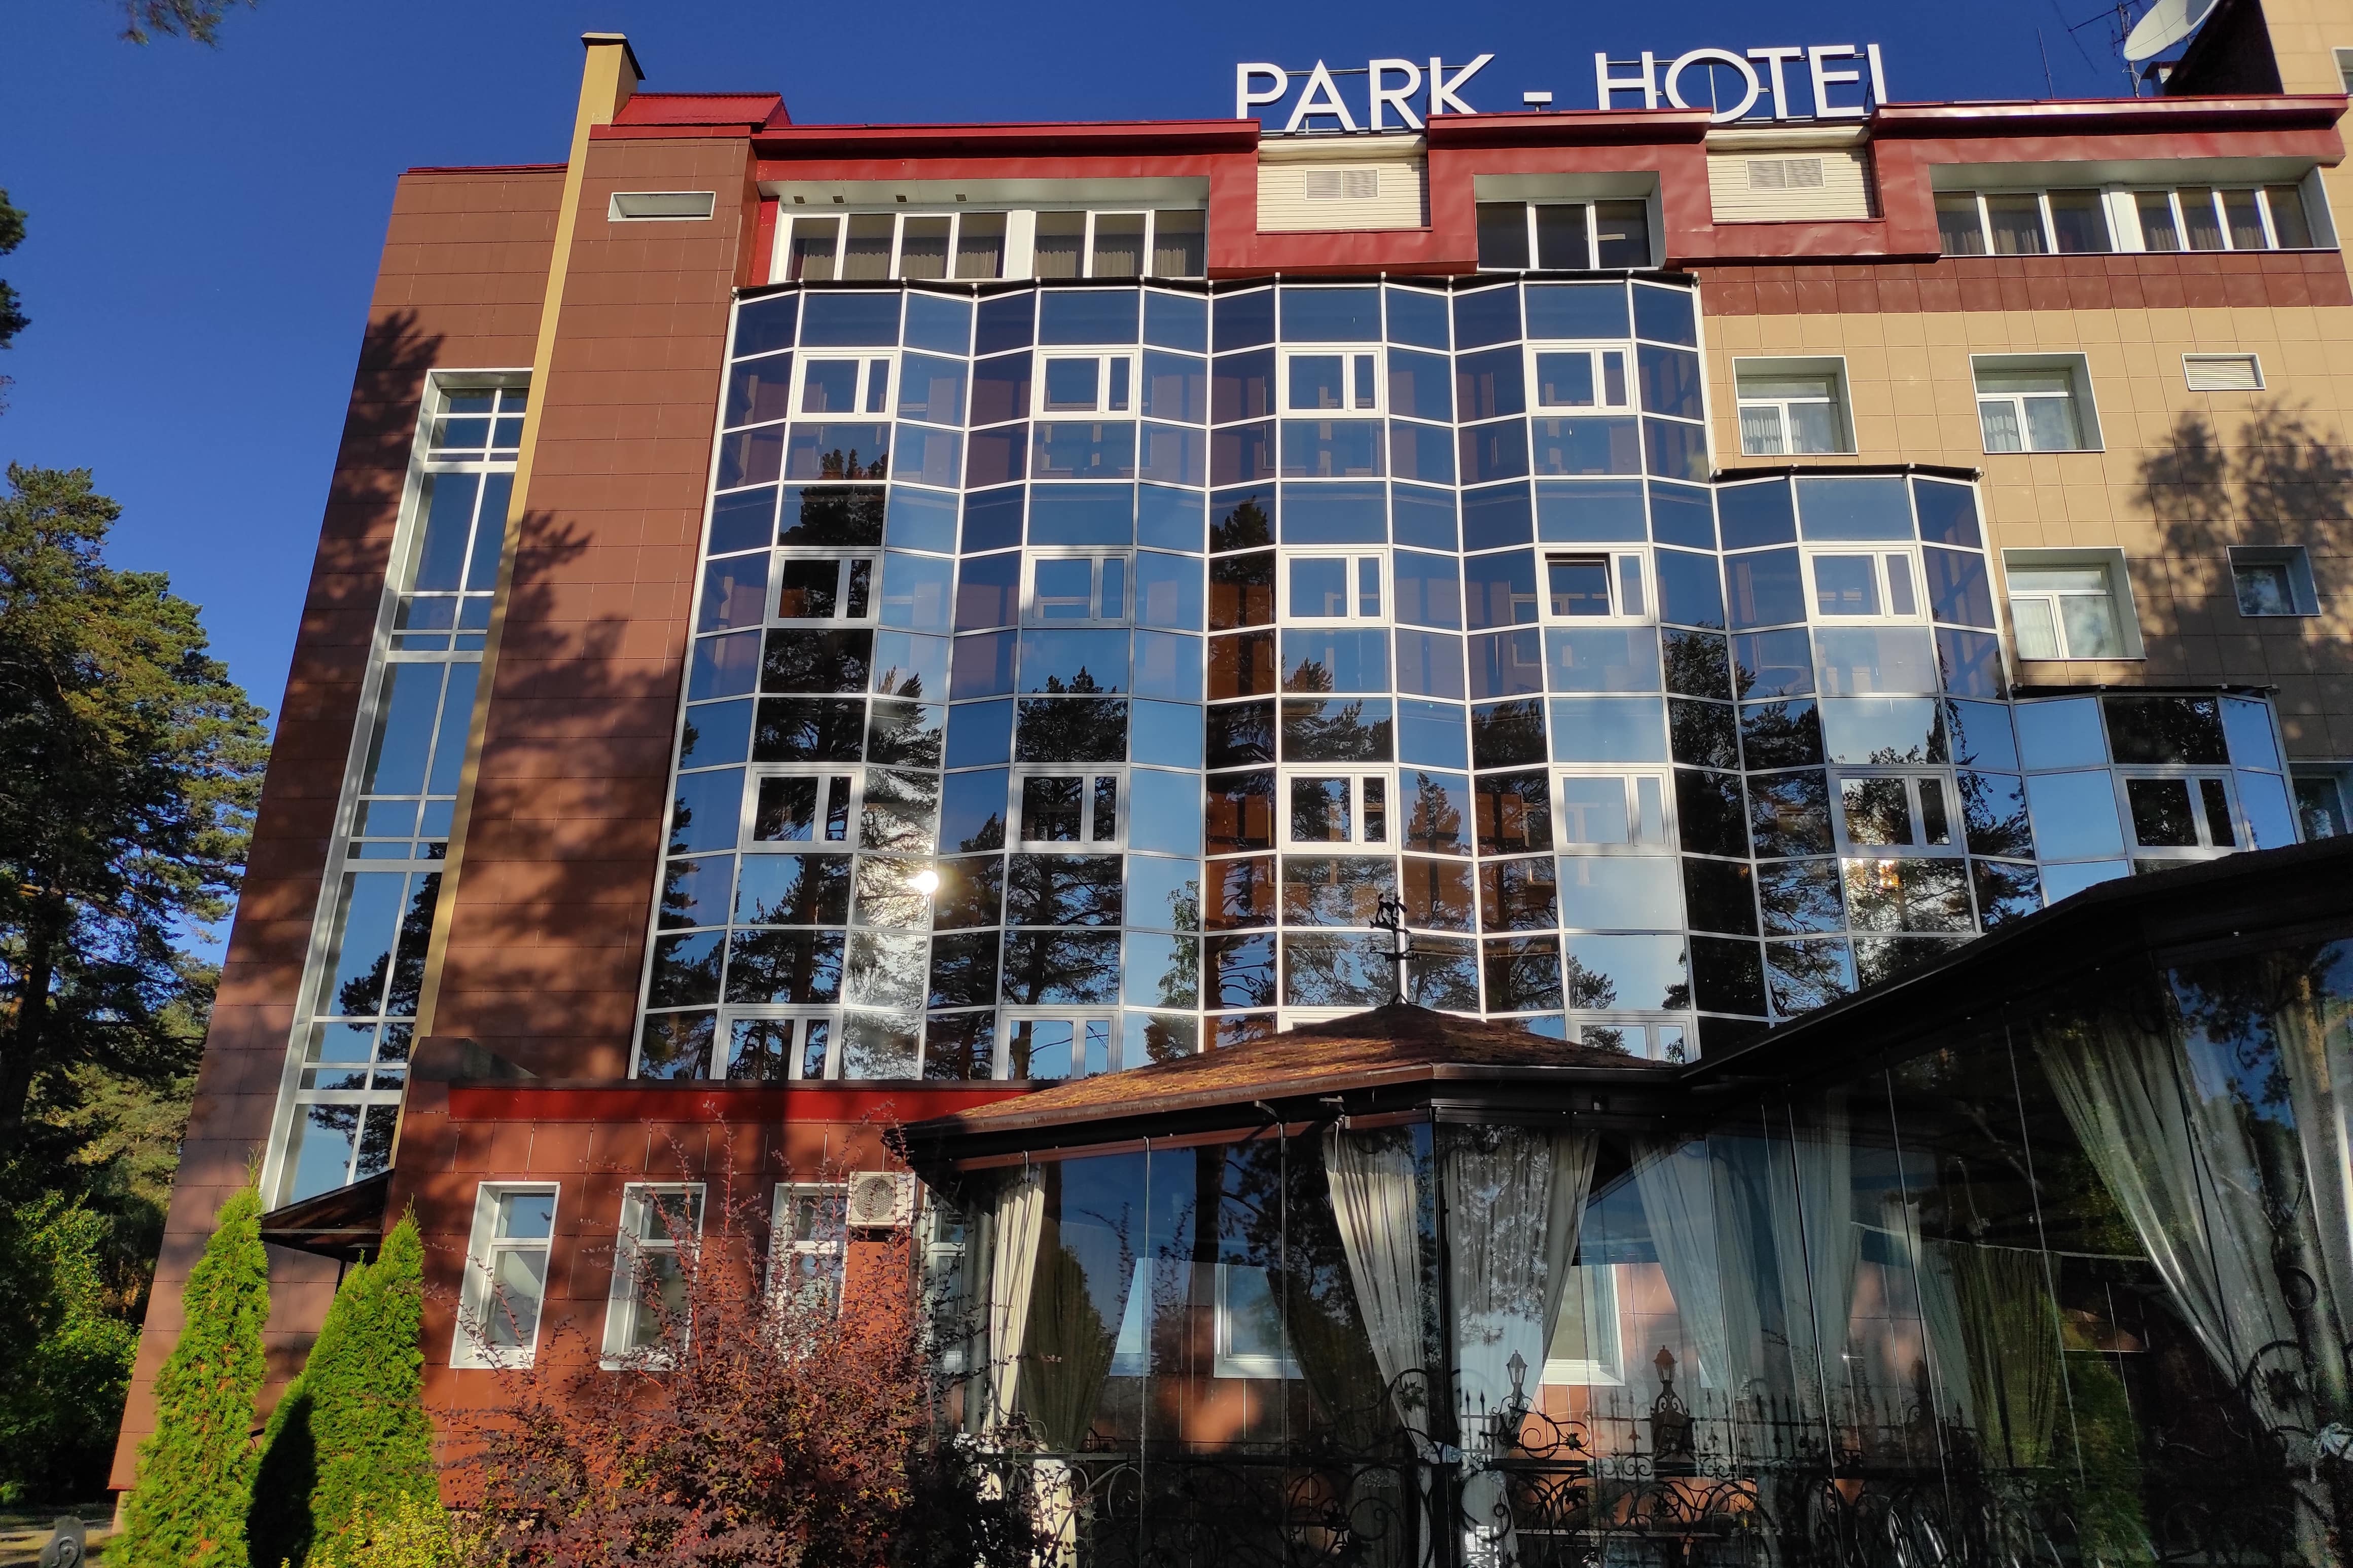 Park - Hotel. Стеклянный фасад здания гостиницы.